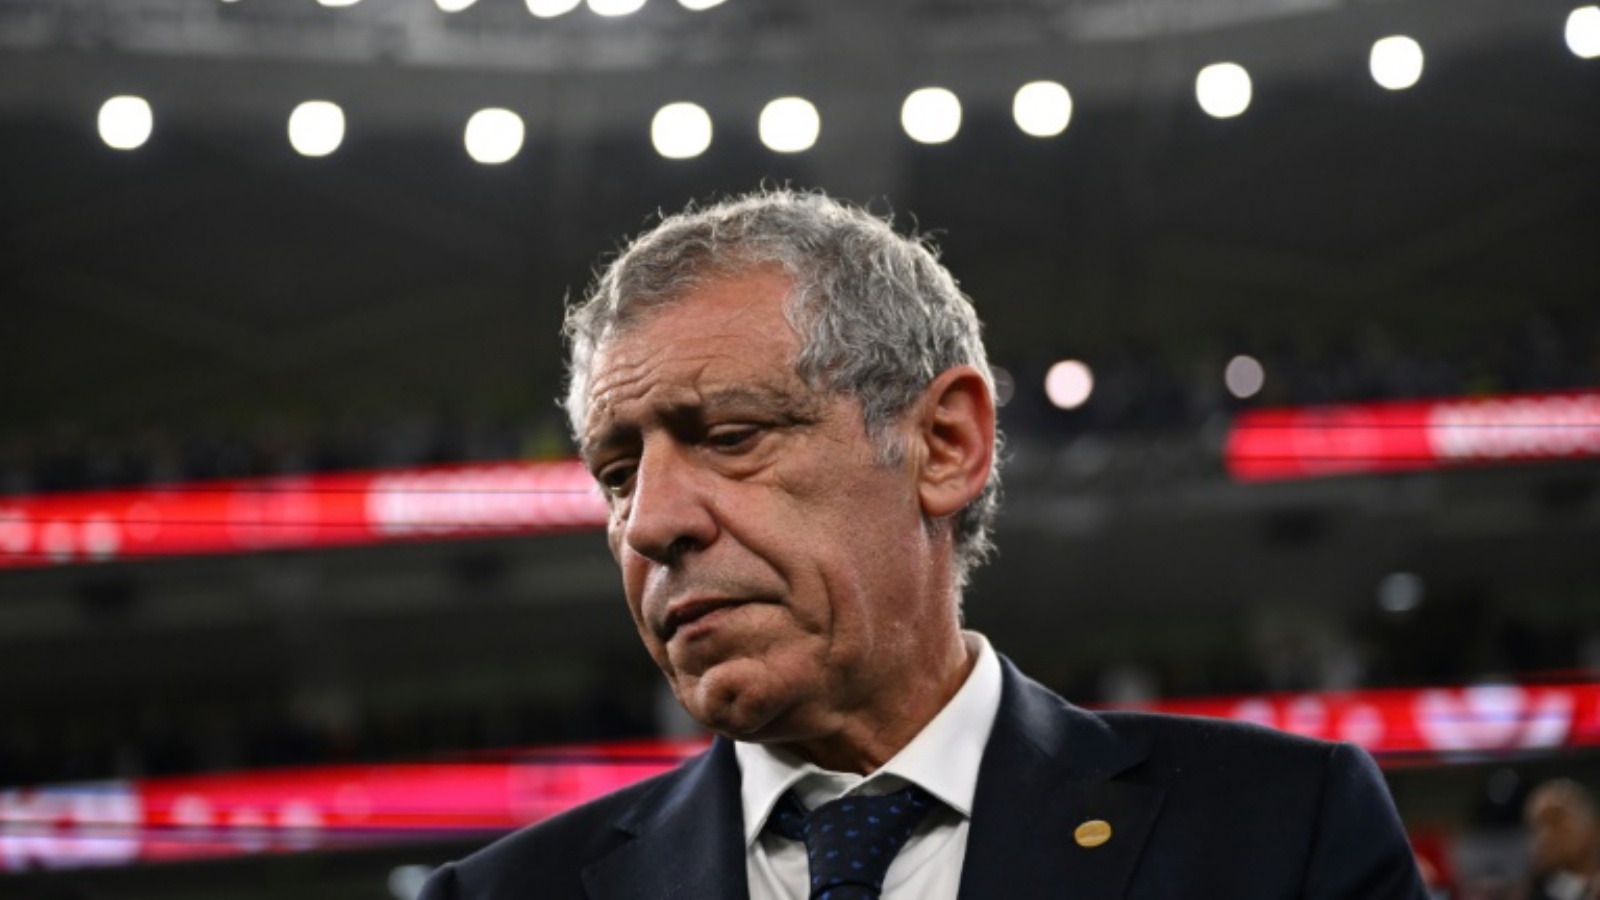 مدرب البرتغال فرناندو سانتوش مستاء عقب خروج البرتغال من ربع نهائي مونديال قطر في 10 ديسمبر 2022.